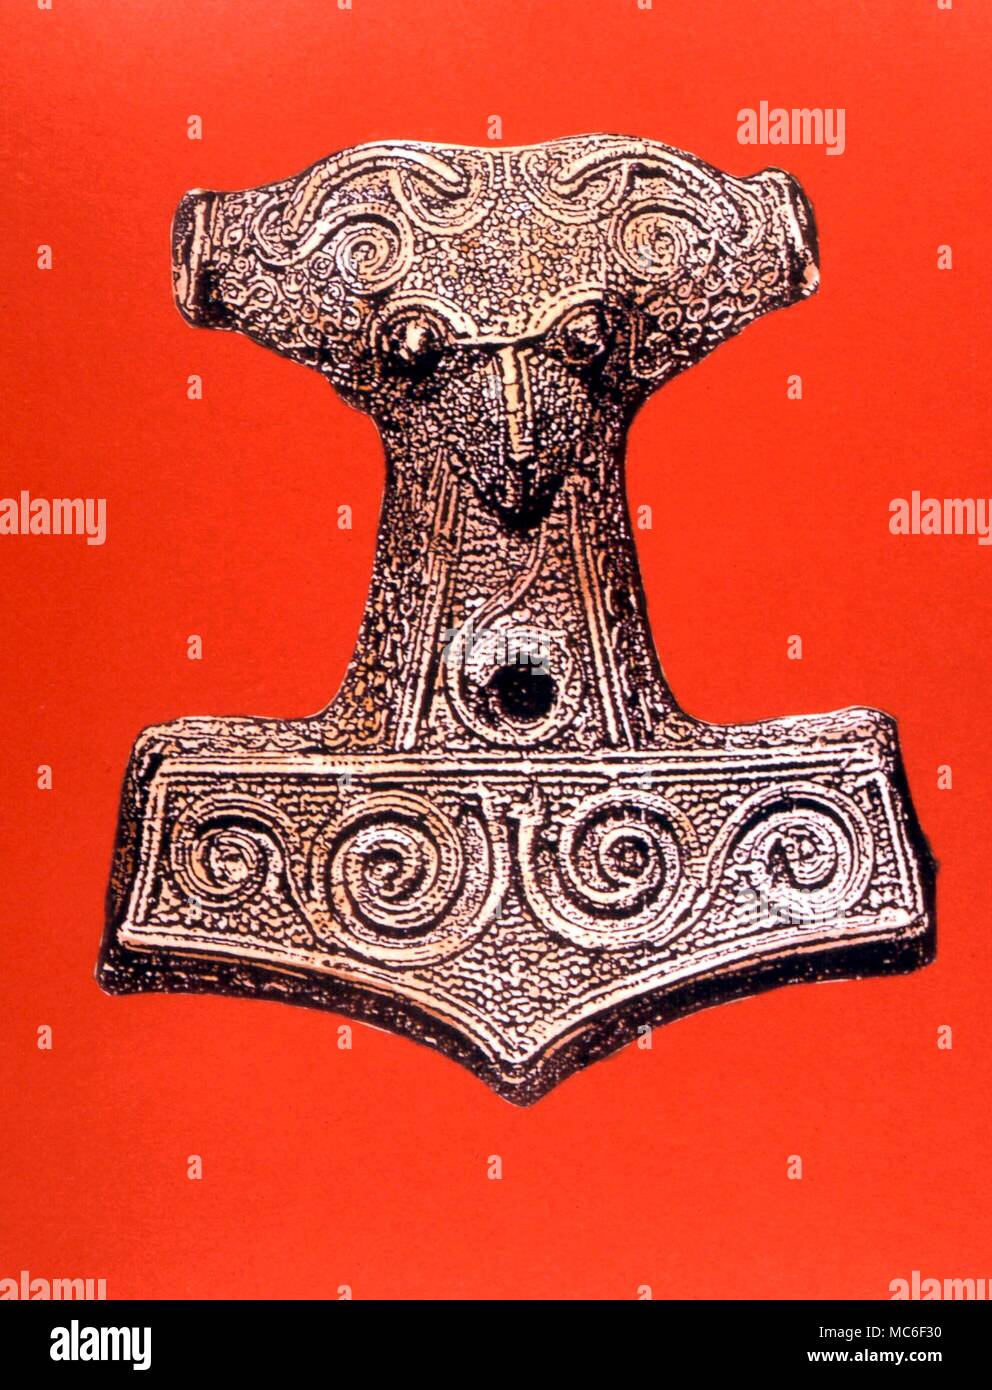 Des amulettes le marteau de Thor - une amulette très utilisés dans les cultures de l'Ordre Teutonique, dit d'être une copie du marteau de Thor, qui a été conçu pour retourner à la magie. Artwork Banque D'Images